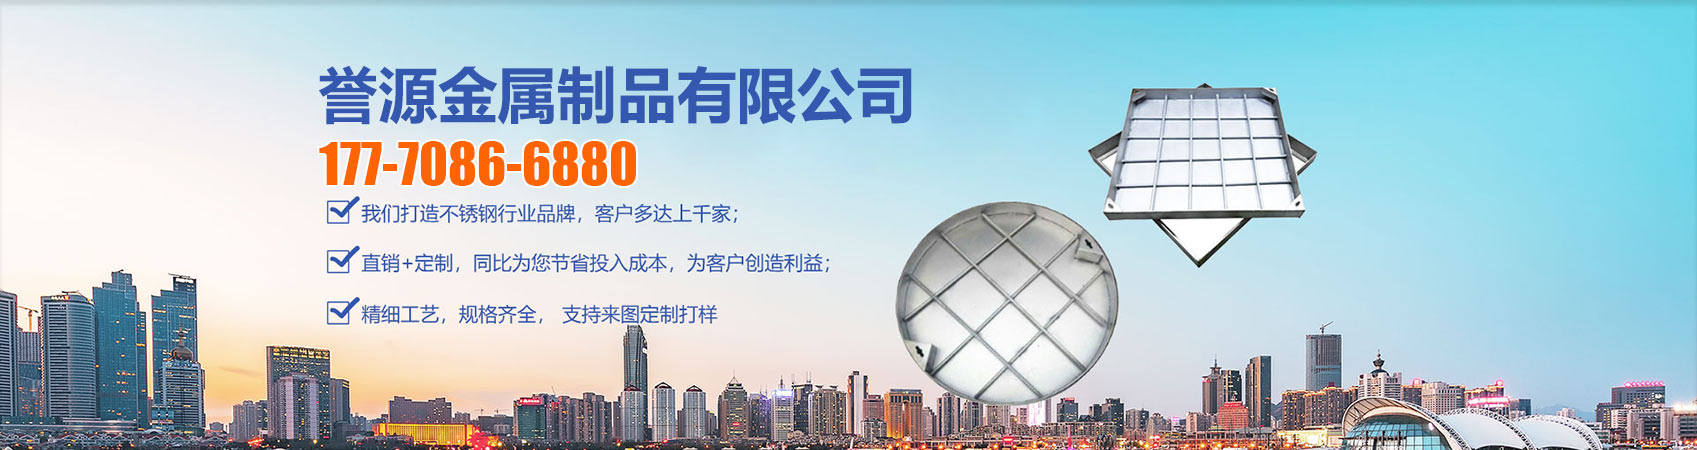 不锈钢线性排水盖板、北京本地不锈钢线性排水盖板、北京、北京不锈钢线性排水盖板